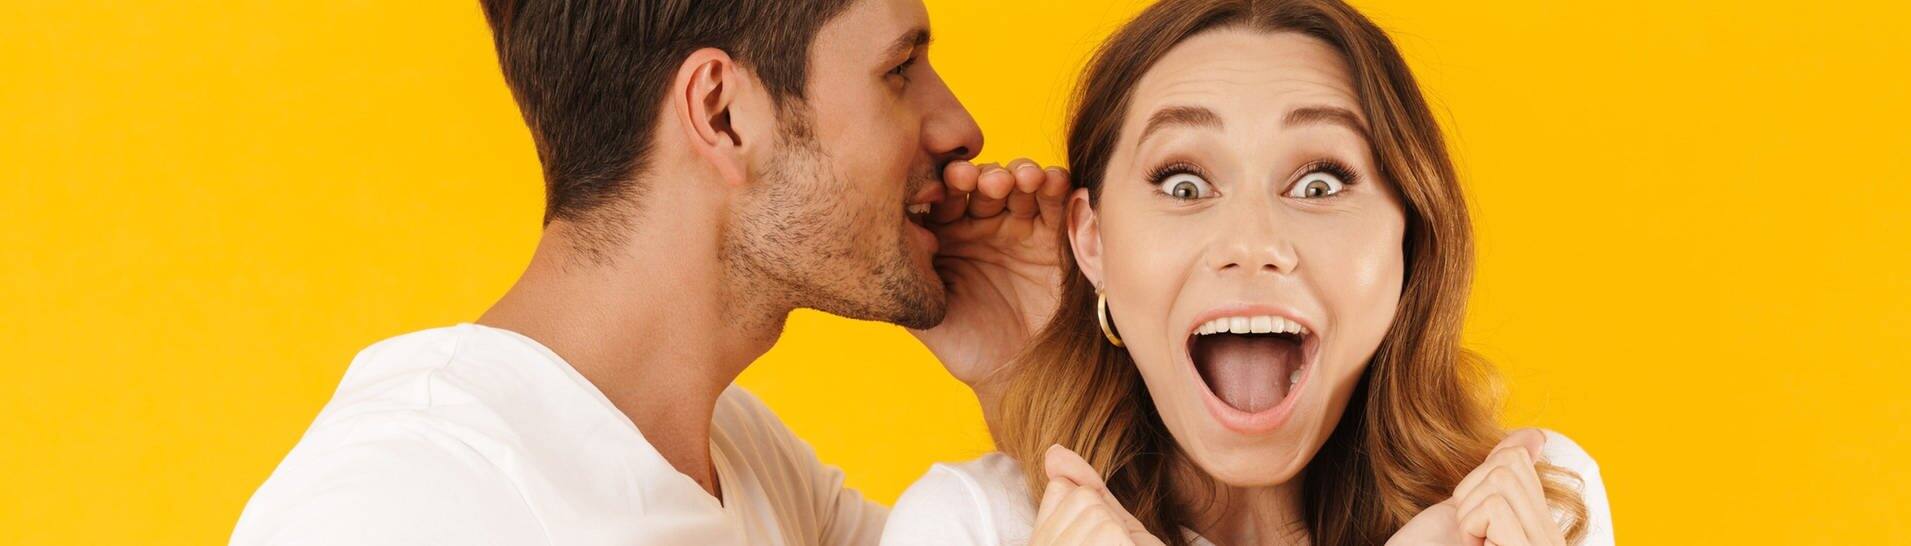 Junger Mann flüstert Frau etwas ins Ohr, sie freut sich (Foto: Adobe Stock/Drobot Dean)